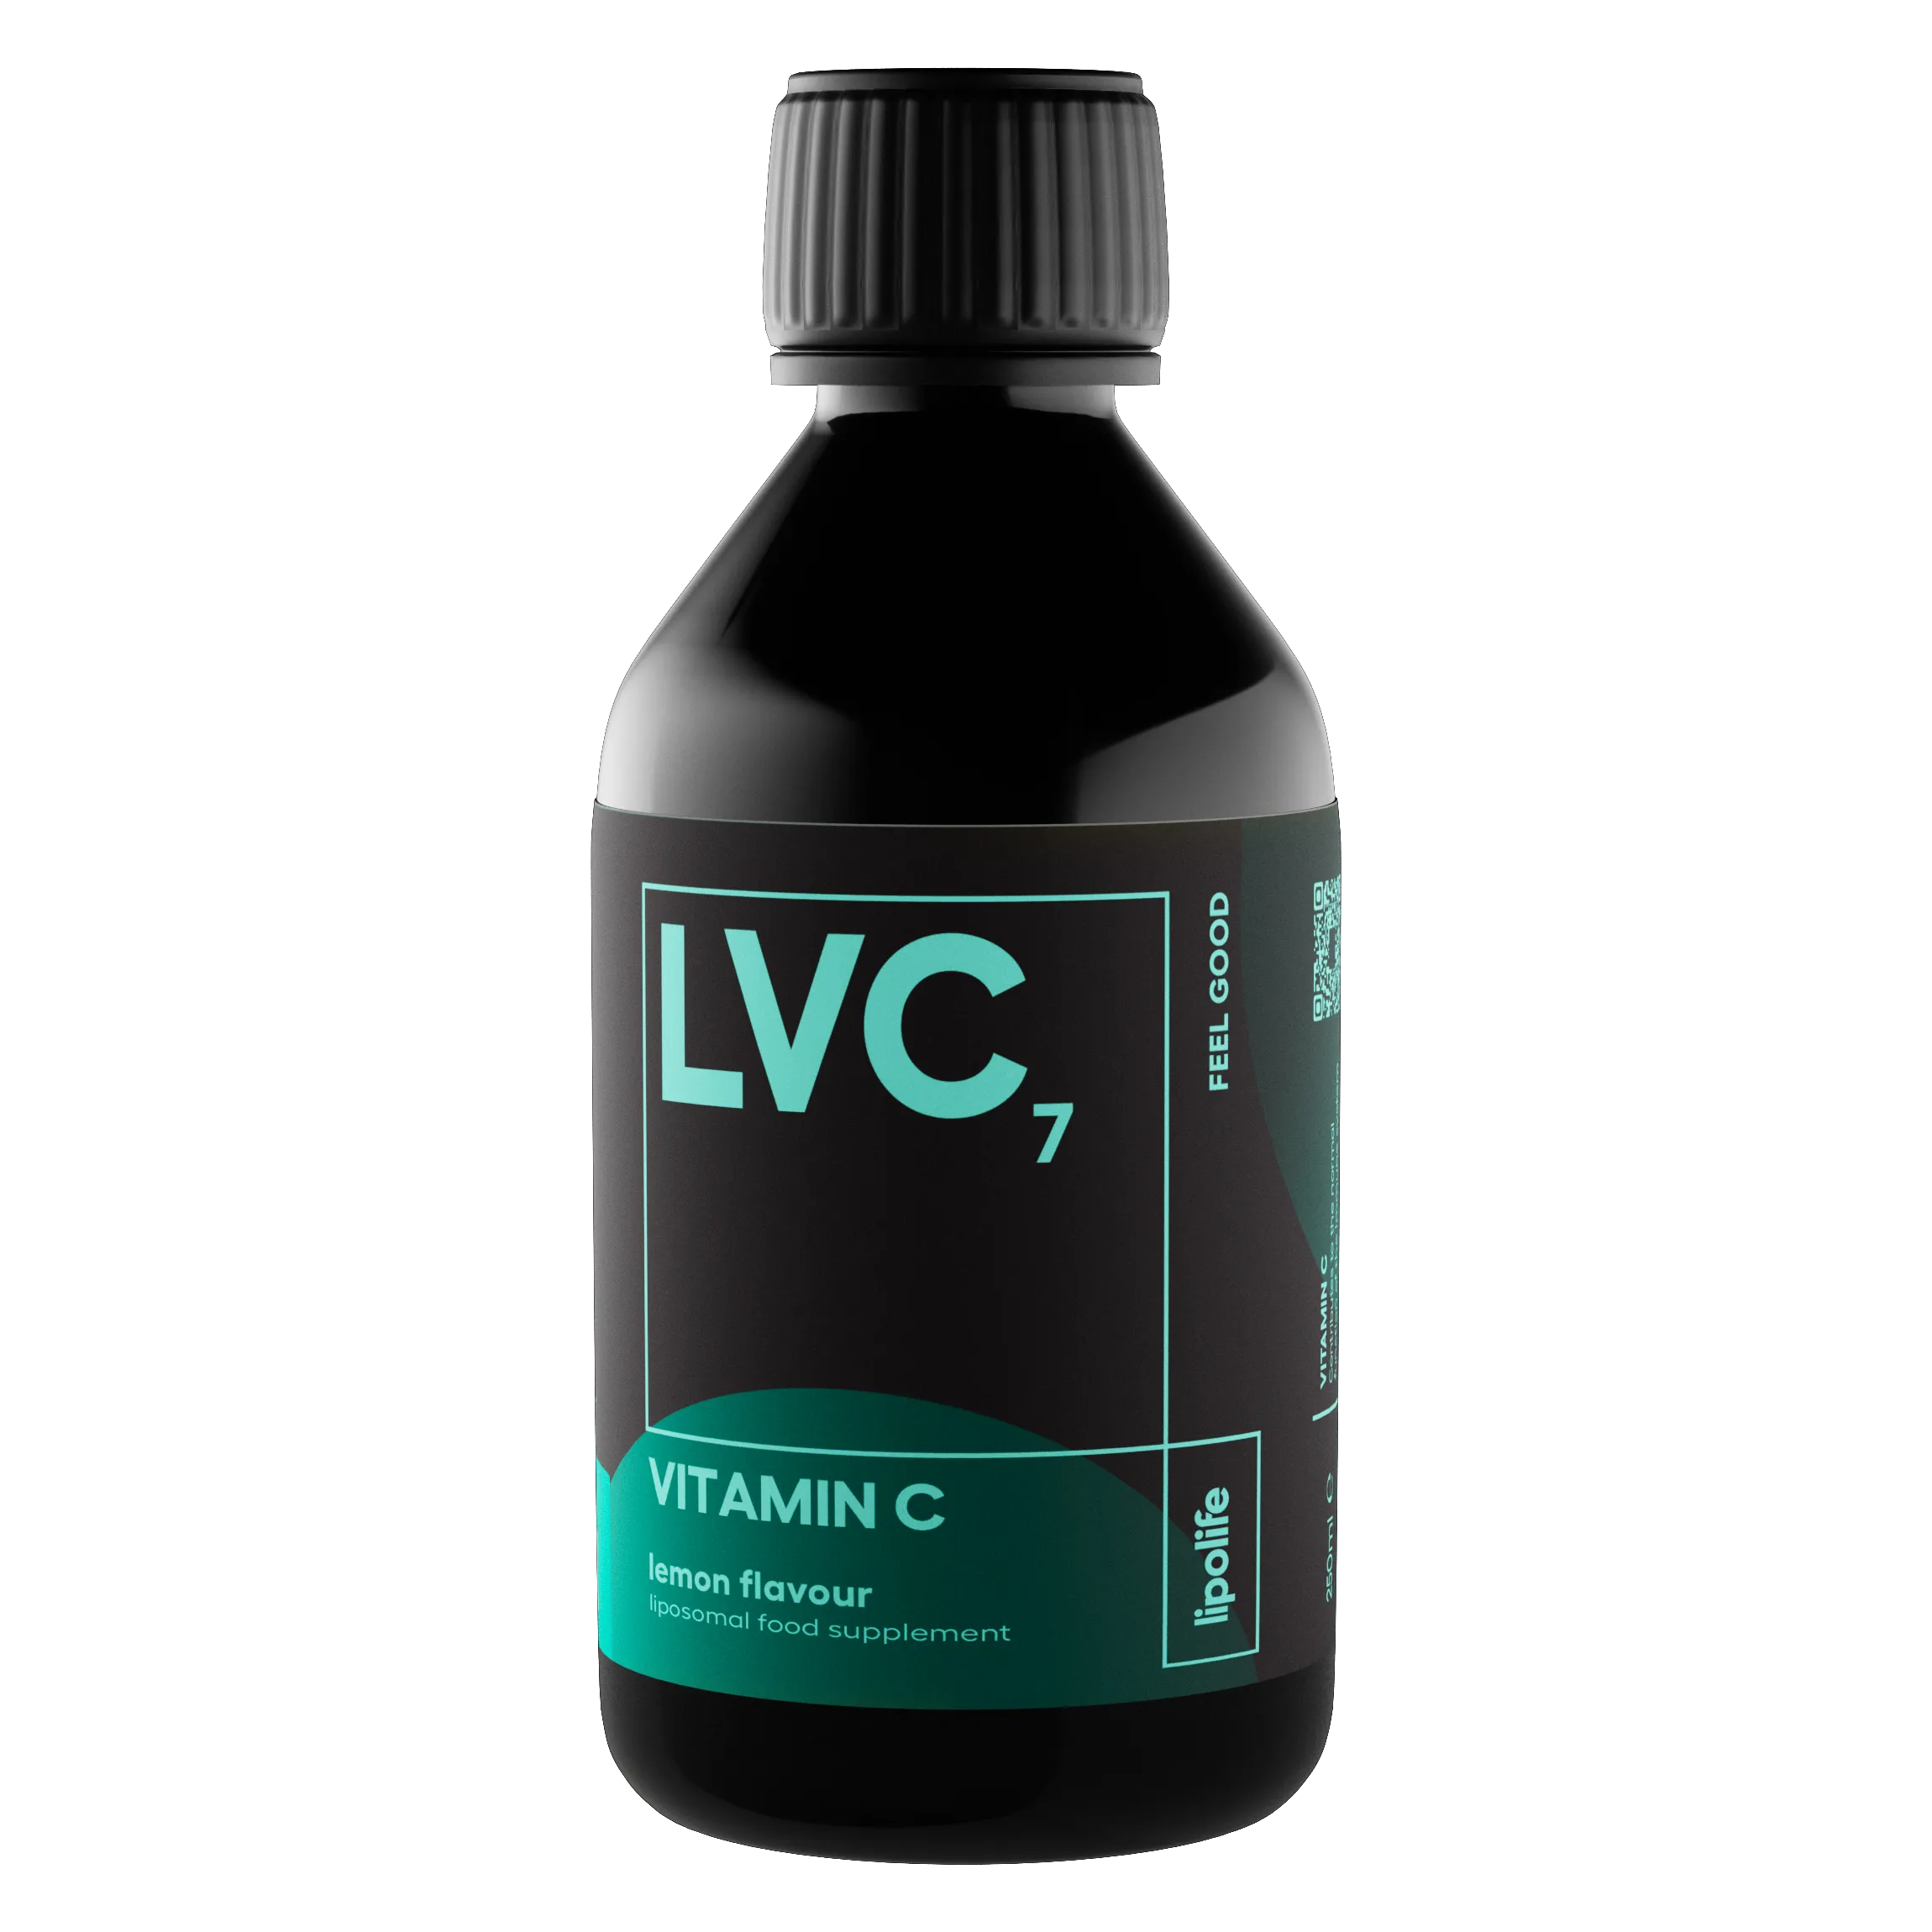 LVC7 - течен и лопозомен витамин C без етанол - лимон, 240 мл.